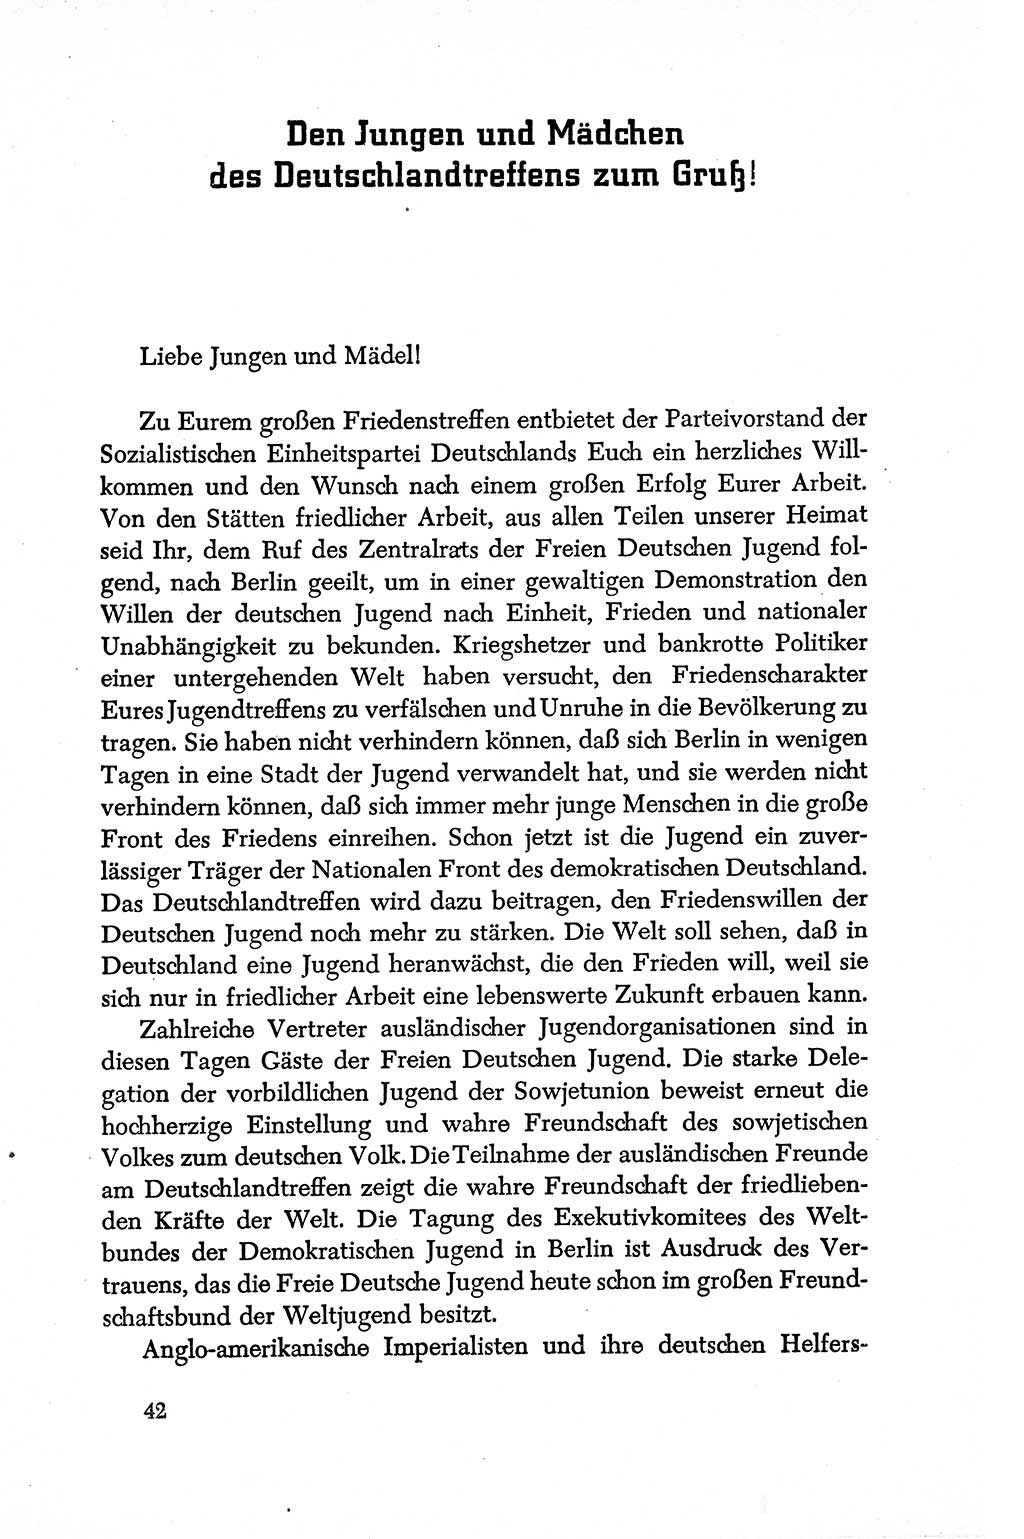 Dokumente der Sozialistischen Einheitspartei Deutschlands (SED) [Deutsche Demokratische Republik (DDR)] 1950-1952, Seite 42 (Dok. SED DDR 1950-1952, S. 42)